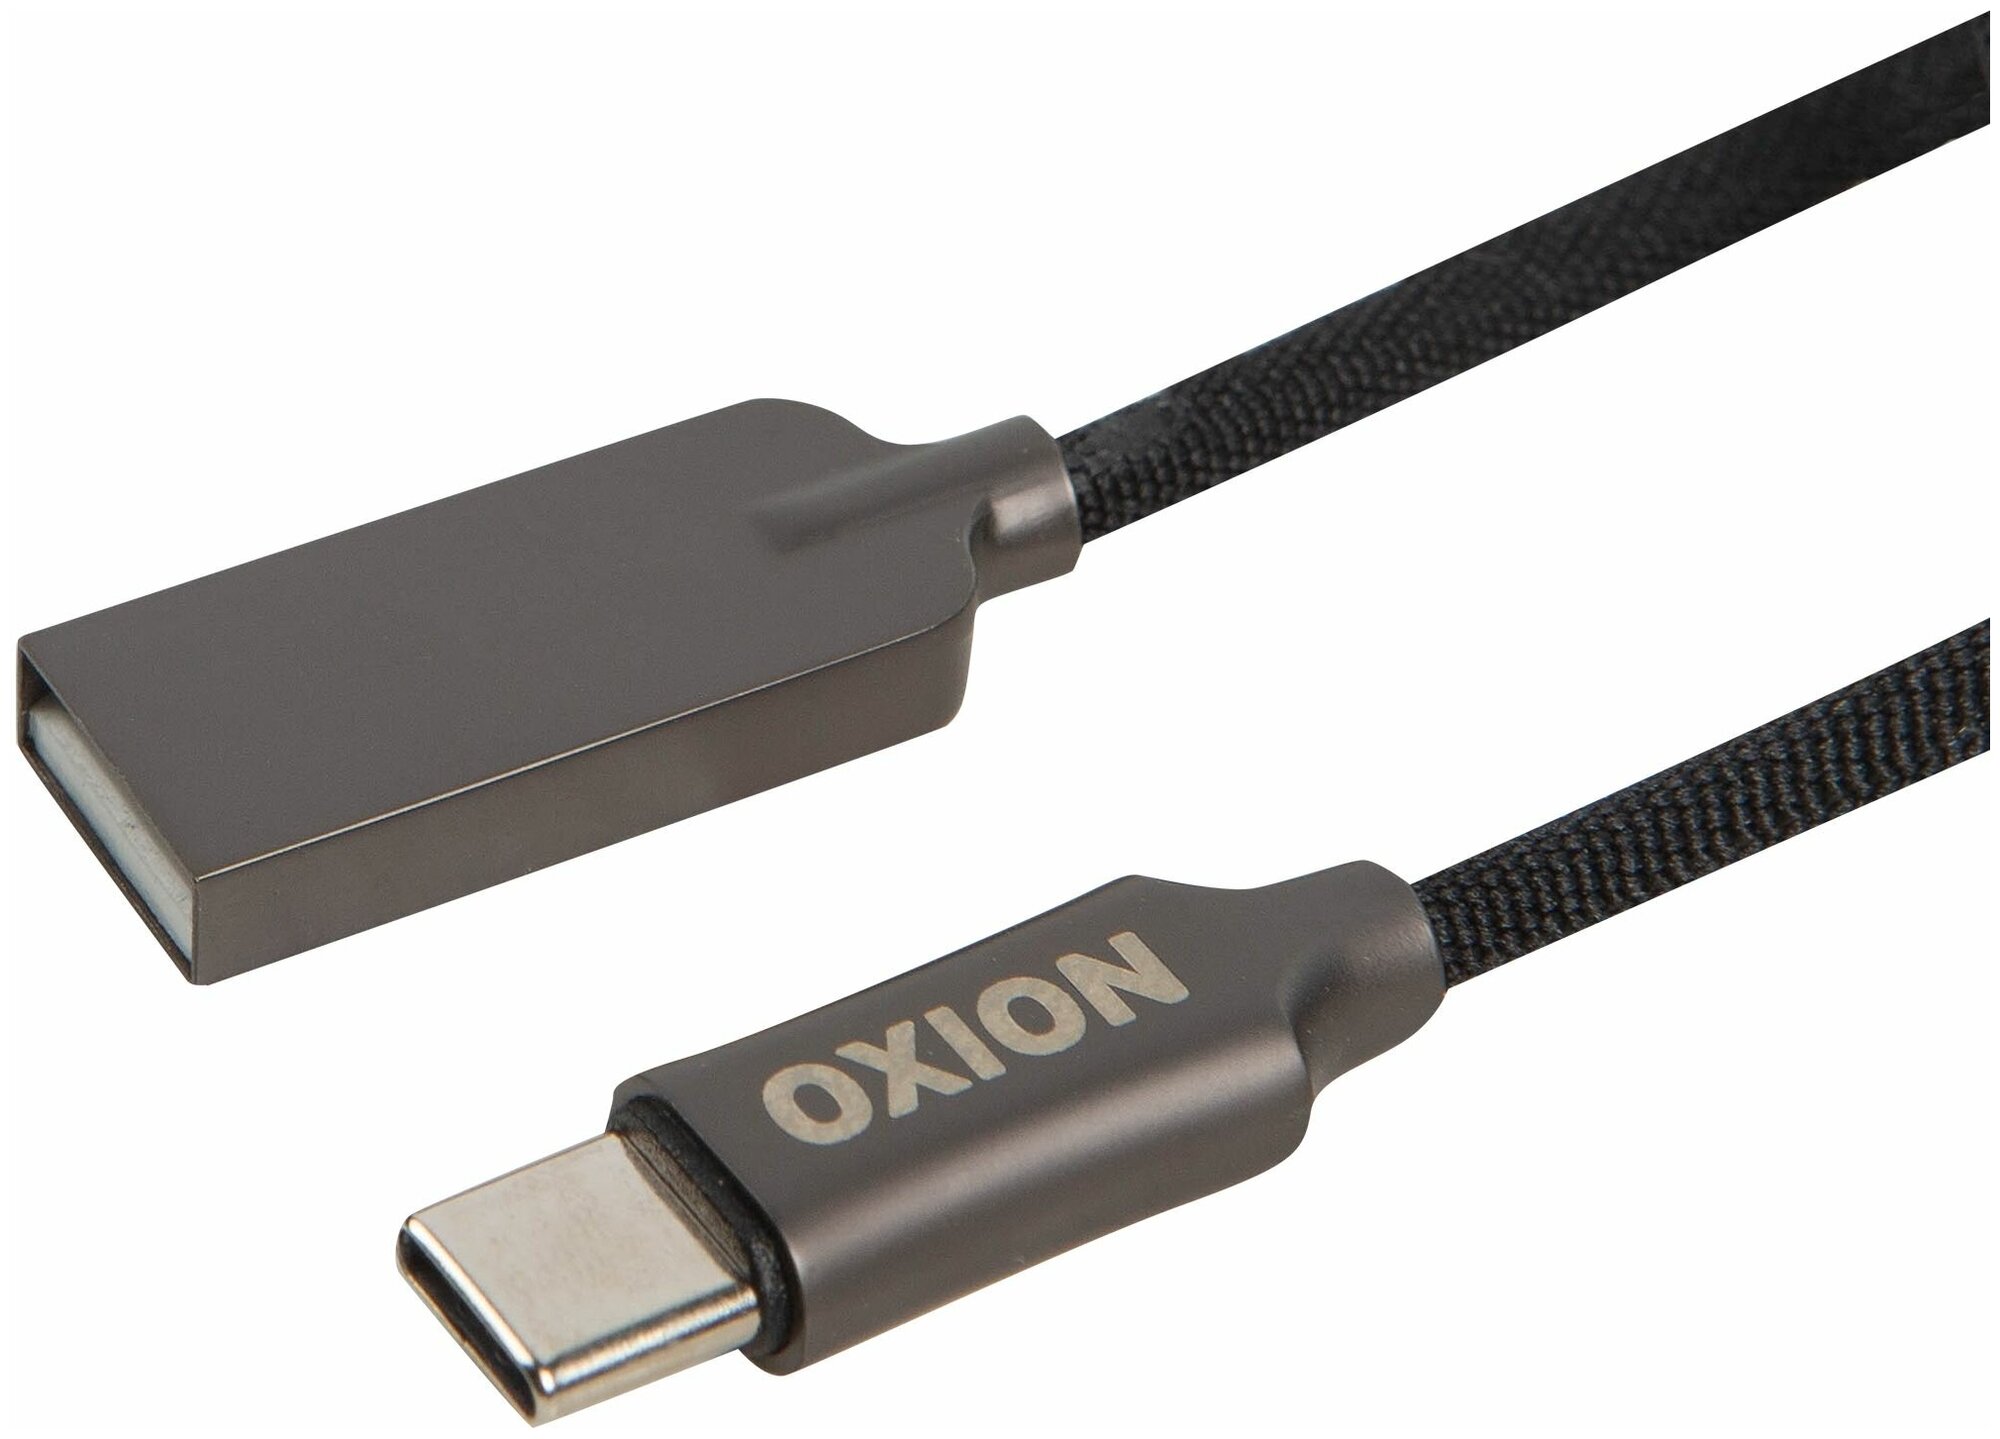 Дата-кабель Type-C Oxion SC034T цвет чёрный